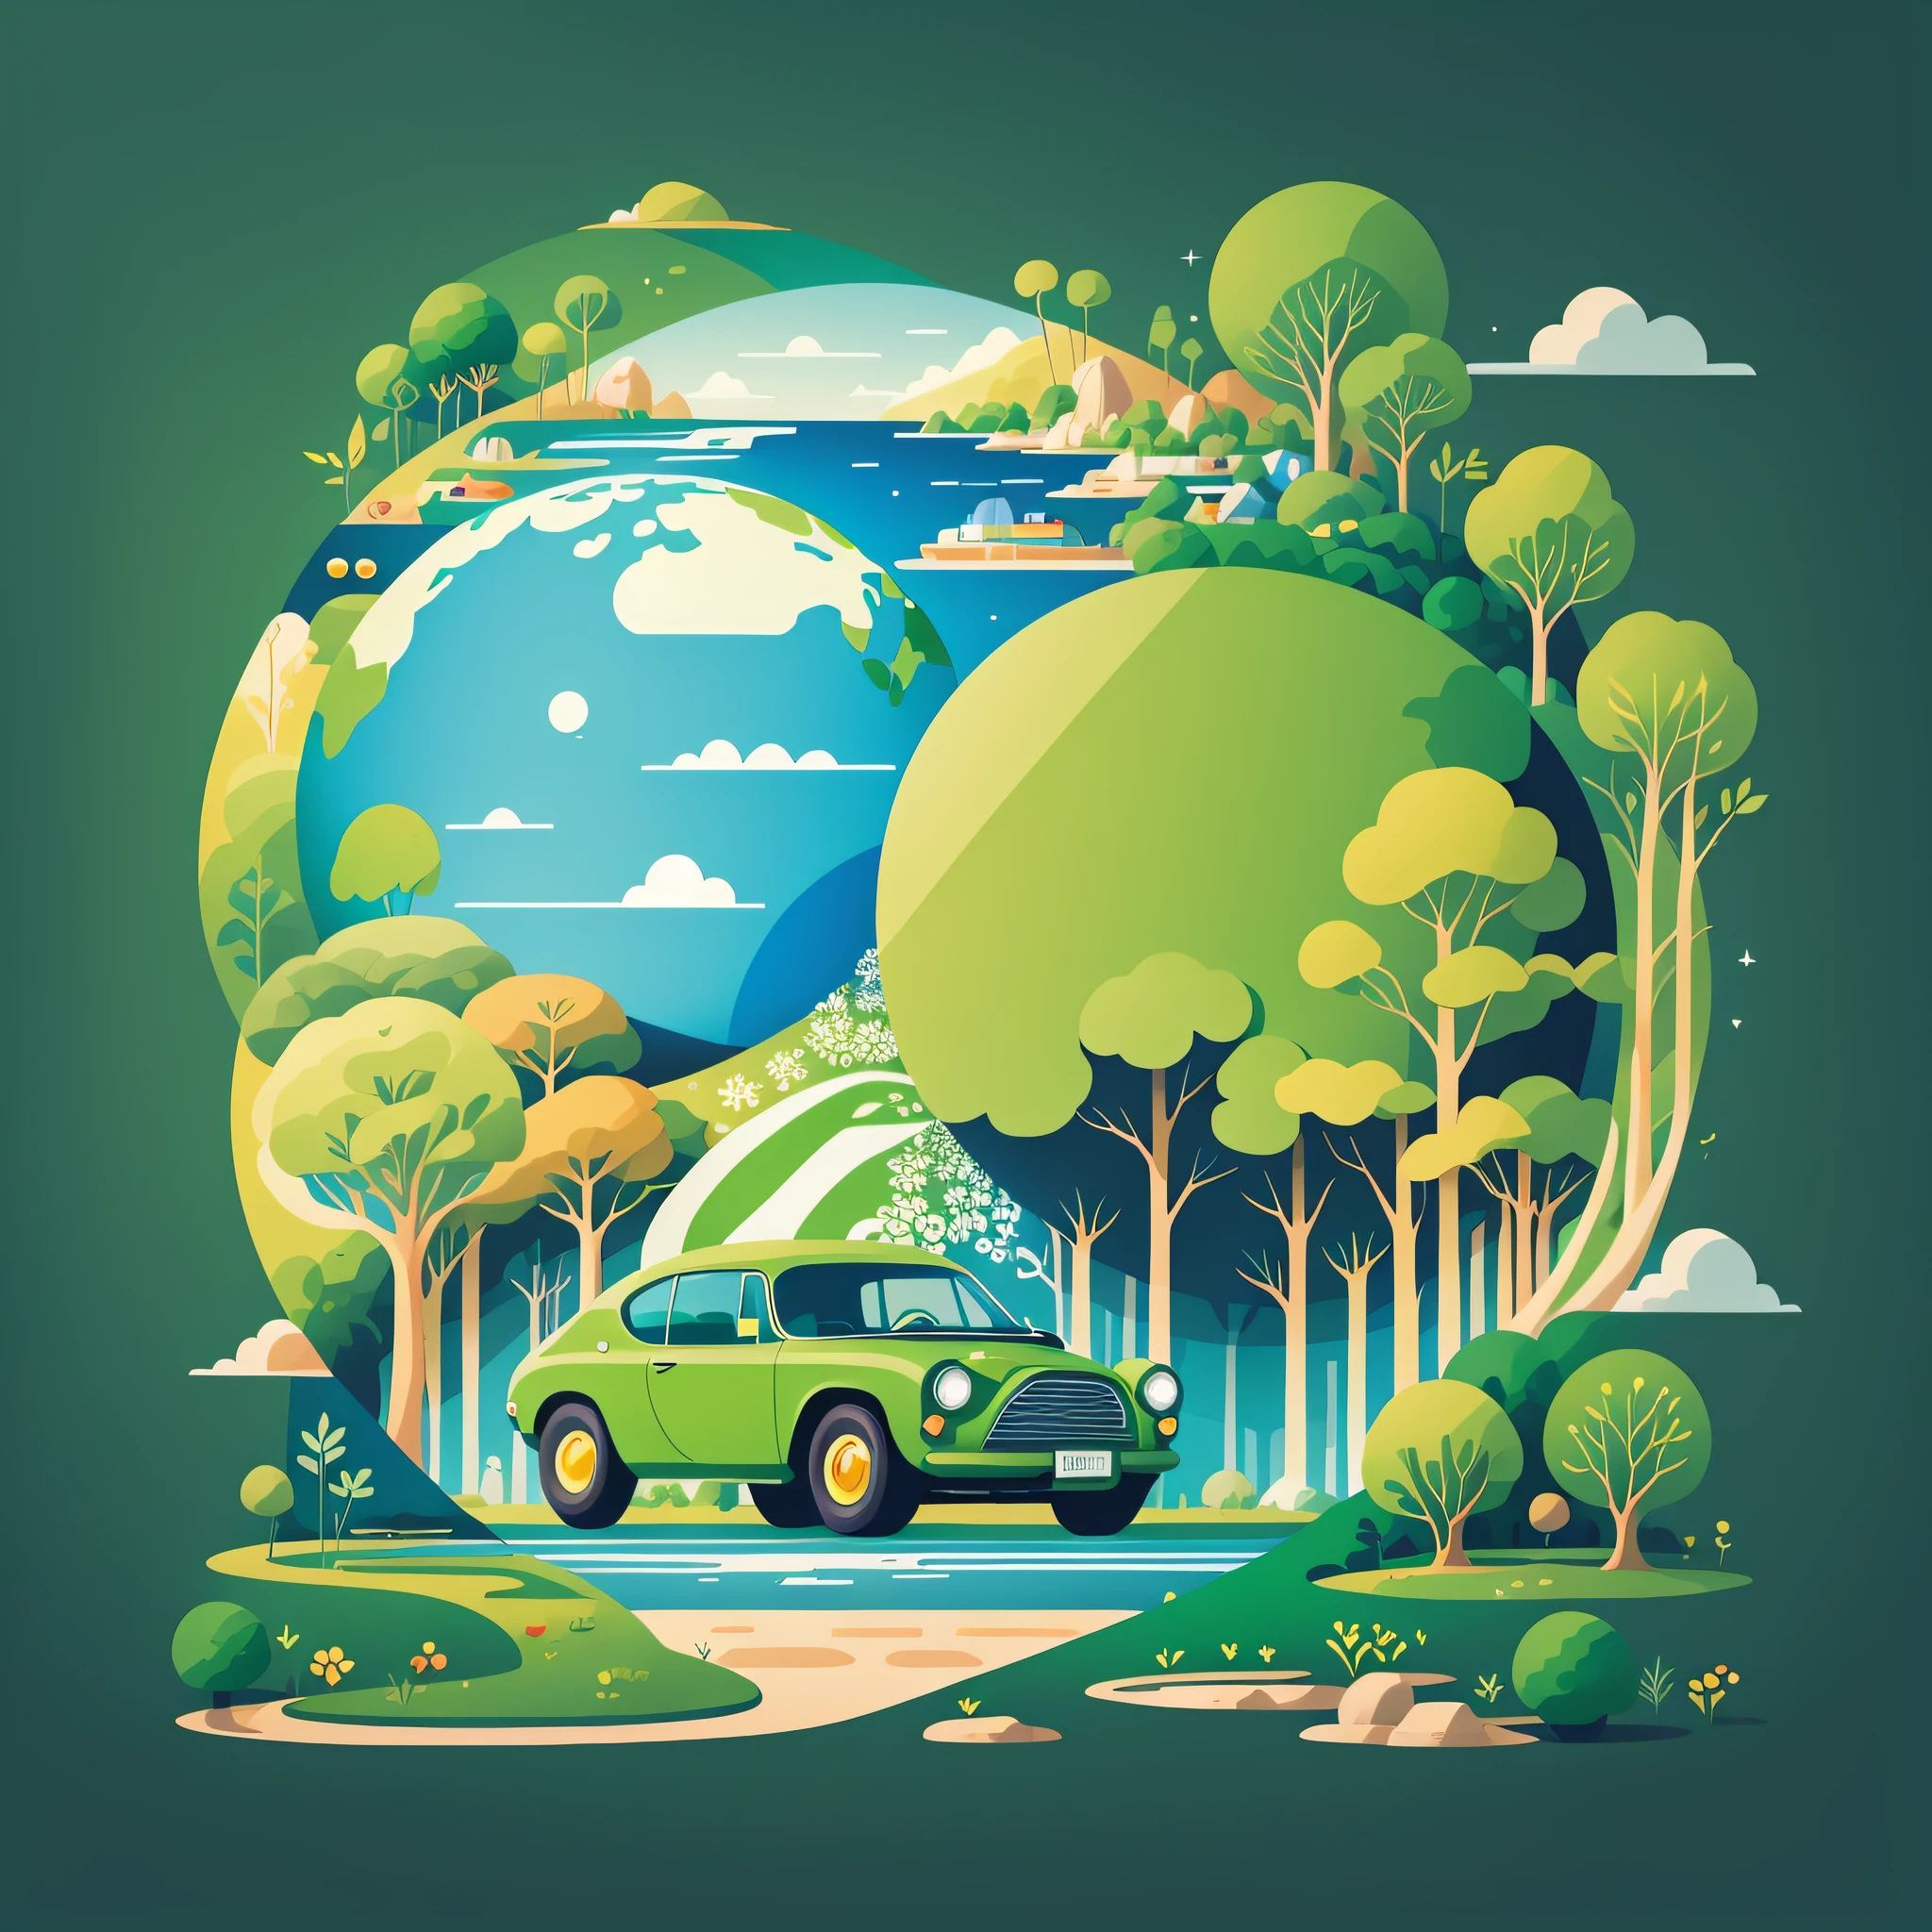 Плакат ко Дню Земли, Плоская иллюстрация, super cute car in Зеленый spherical earth, деревья, цветы, пейзаж, синий, Зеленый, желтый, простой фон, центральная композиция, яркие цвета, светотень, супер высокая детализация, 4k, Плоская иллюстрация --auto --s2